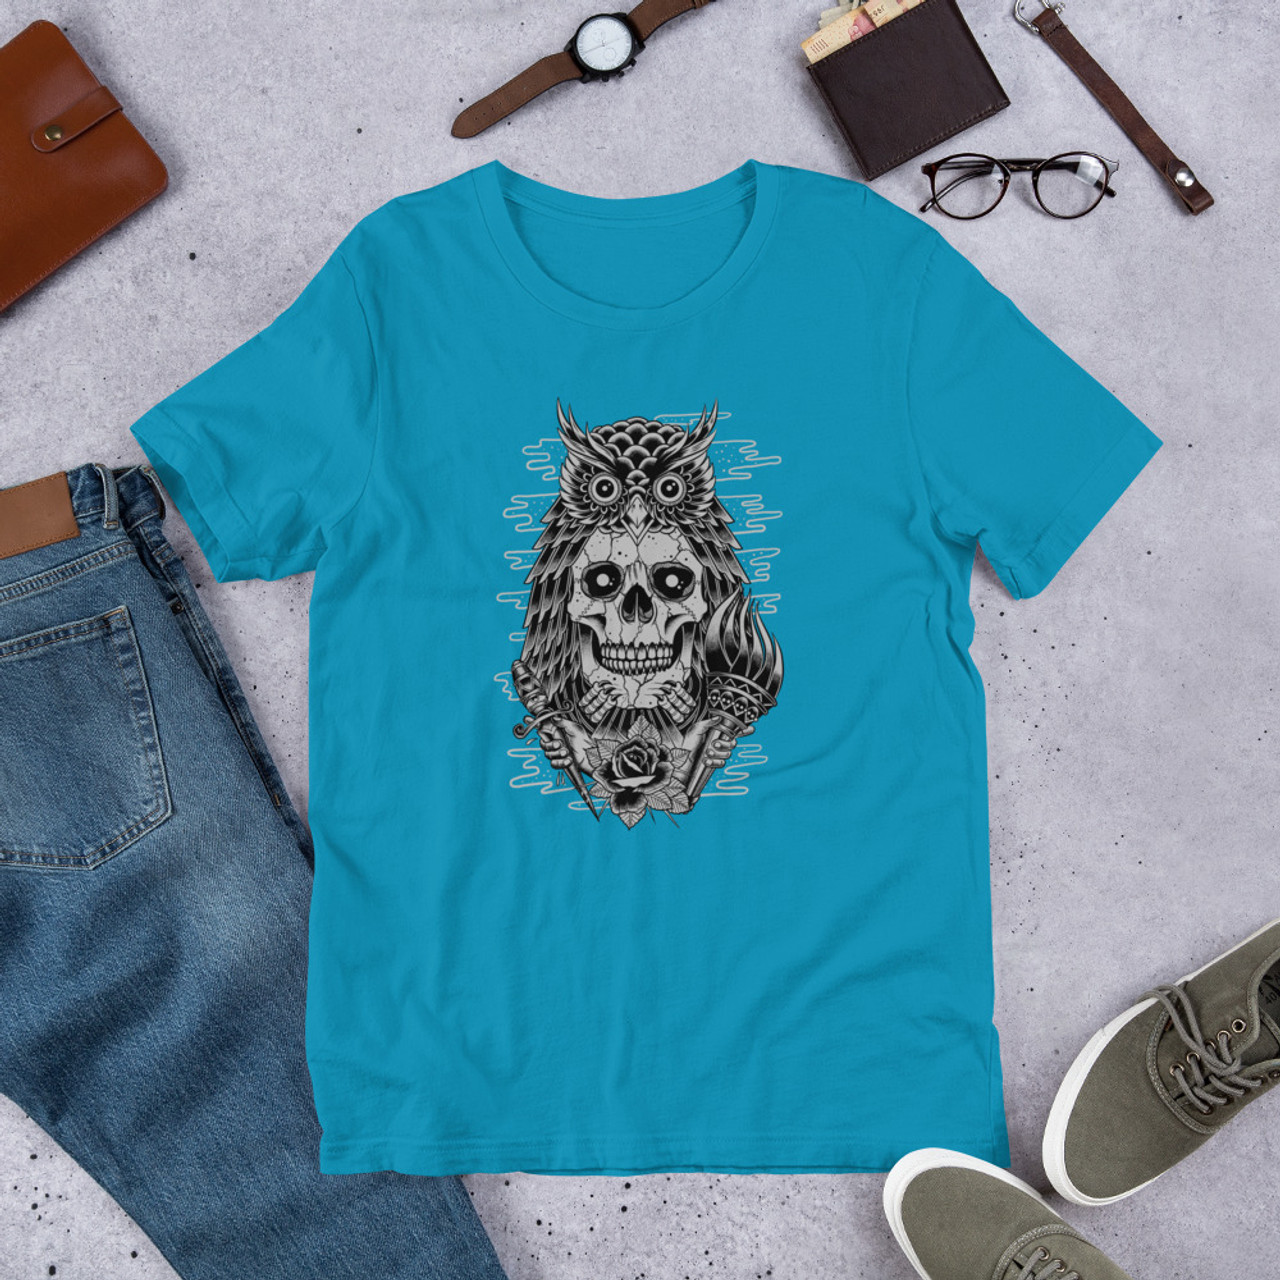 Aqua T-Shirt - Bella + Canvas 3001 Owl Skull